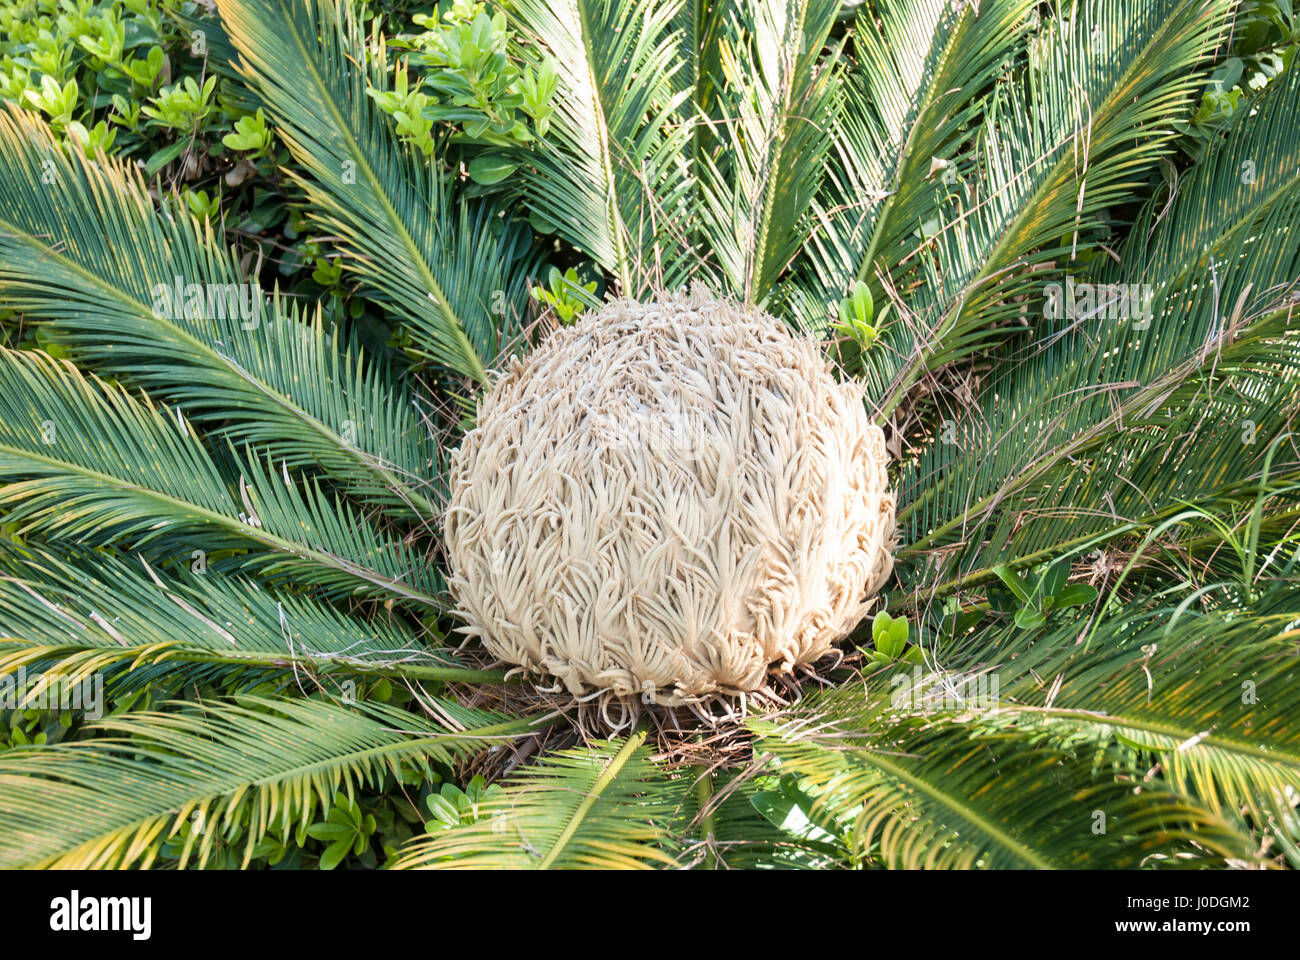 Sago Palm with blossom Cycas revoluta Stock Photo